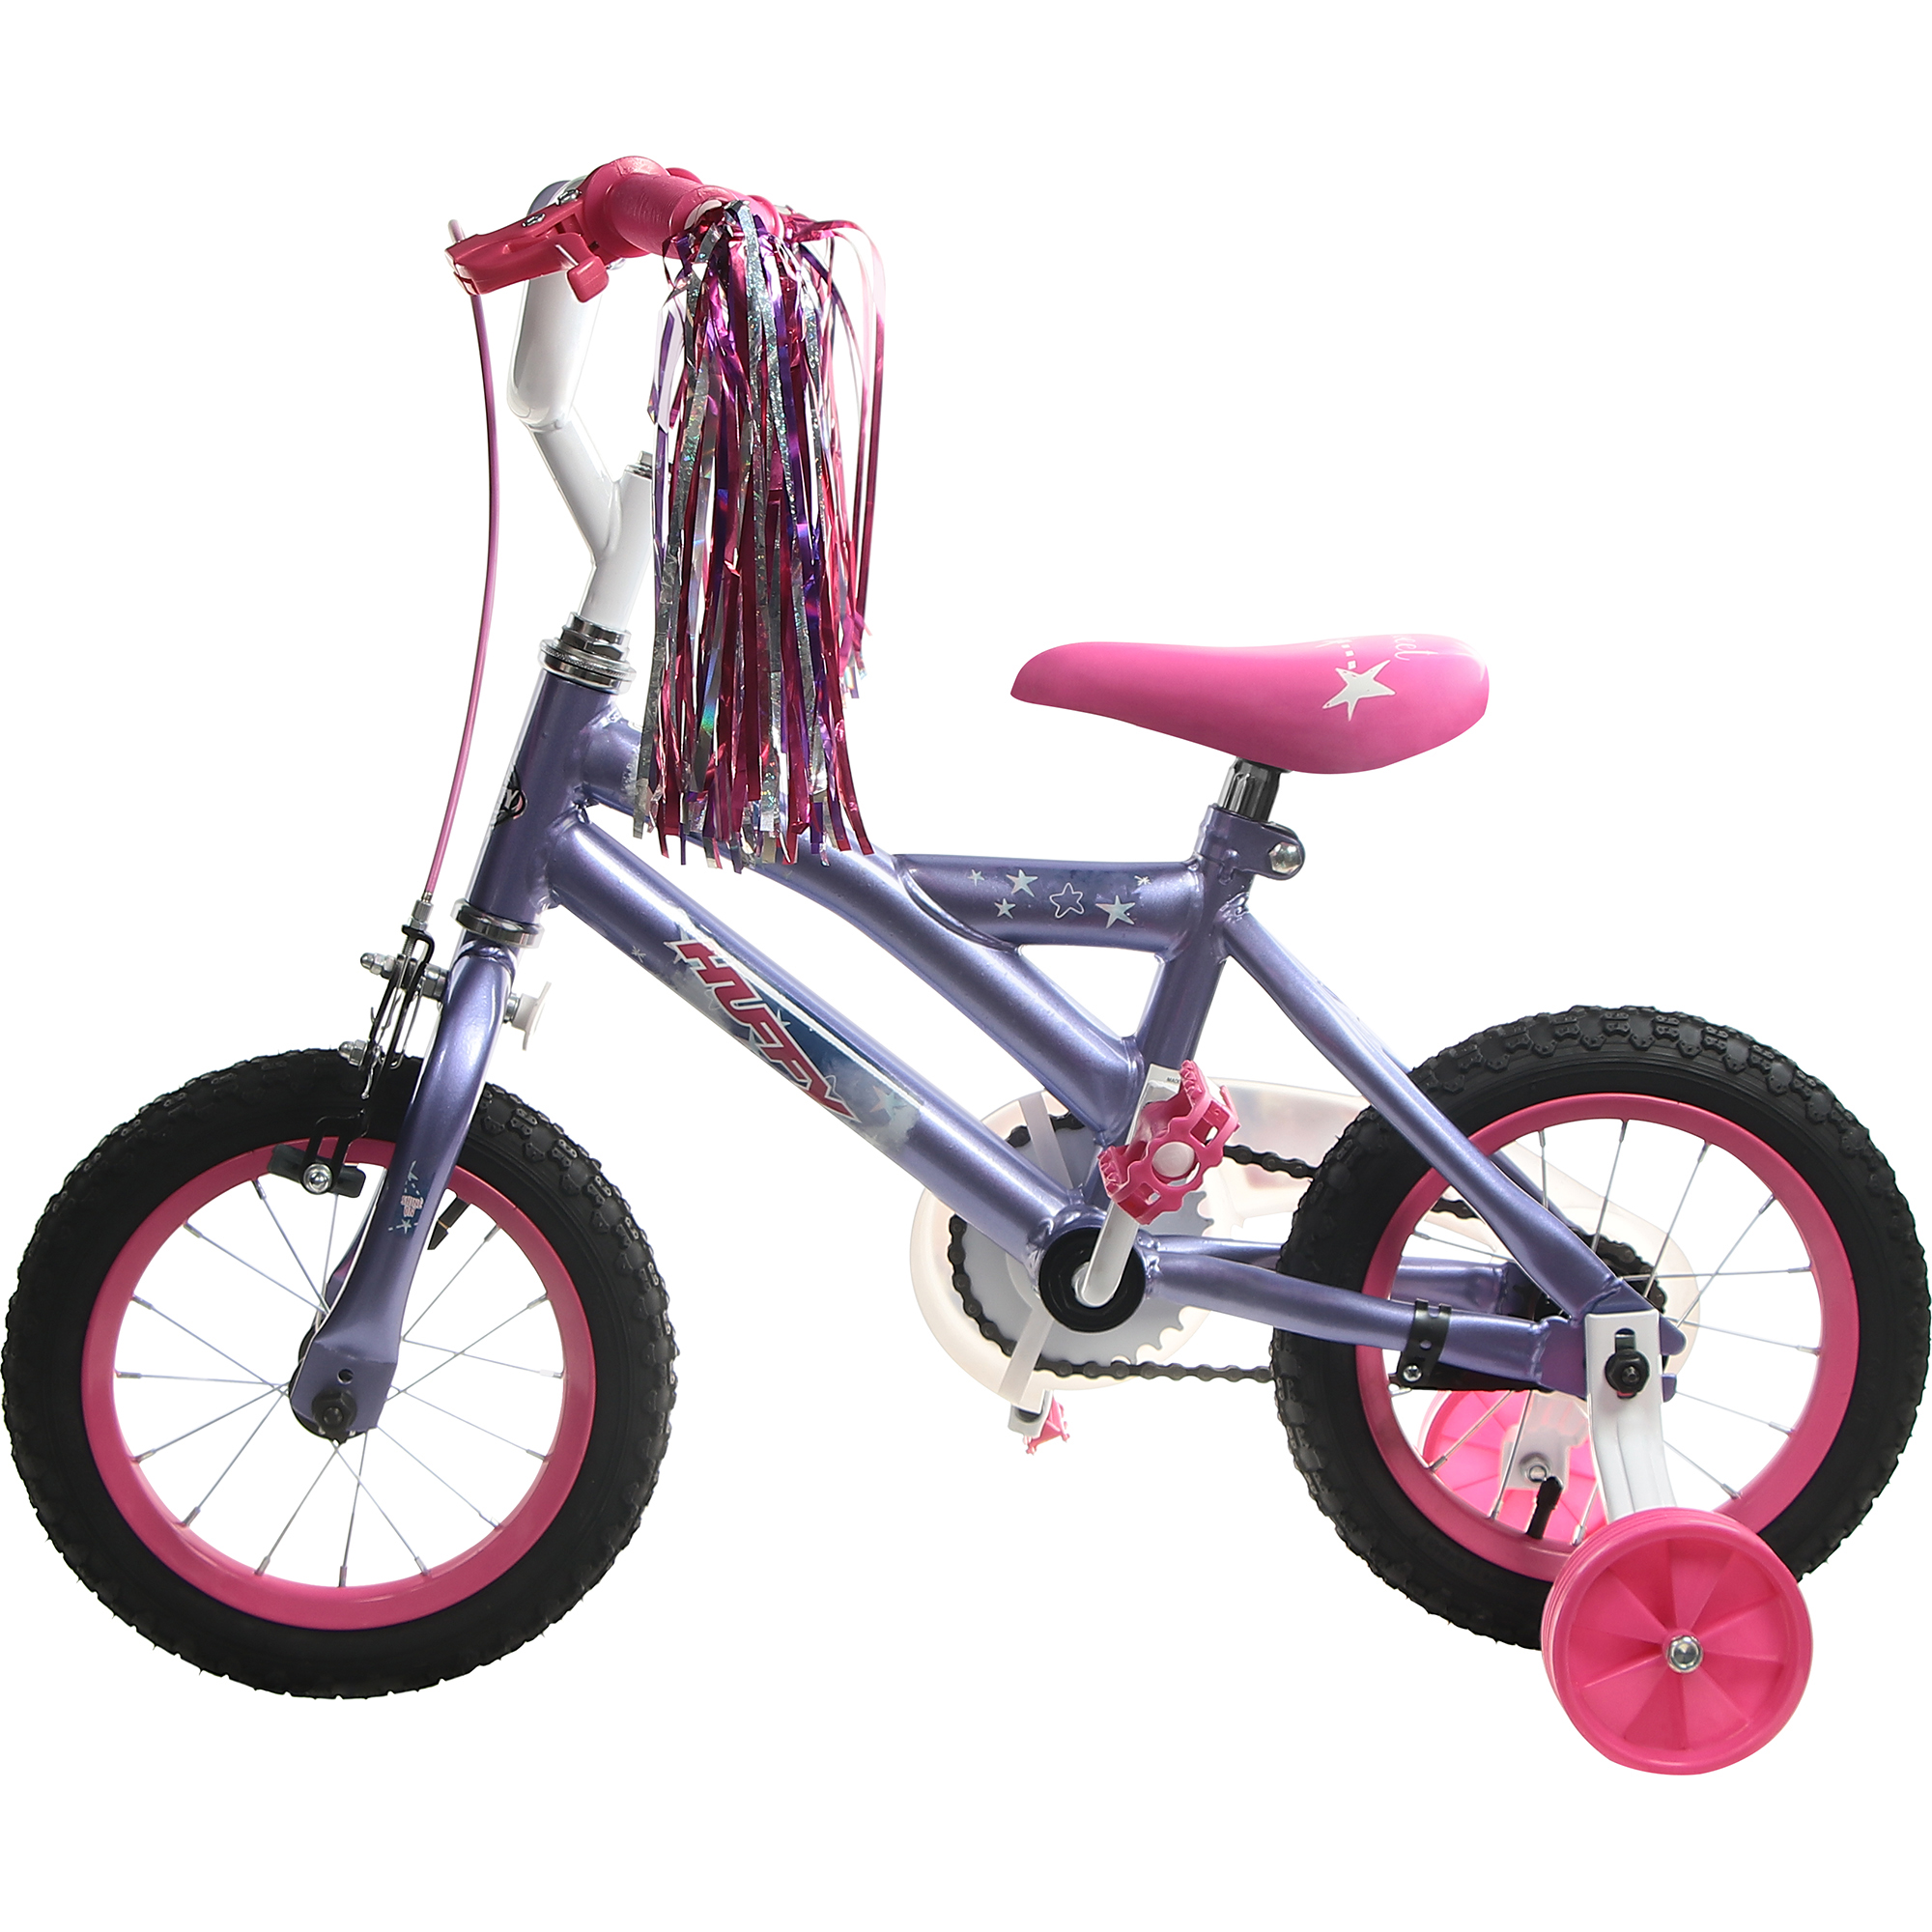 Велосипед детский Huffy So sweet, 12, для девочек велосипед складной casadei allumiminio 20 дюймов серый